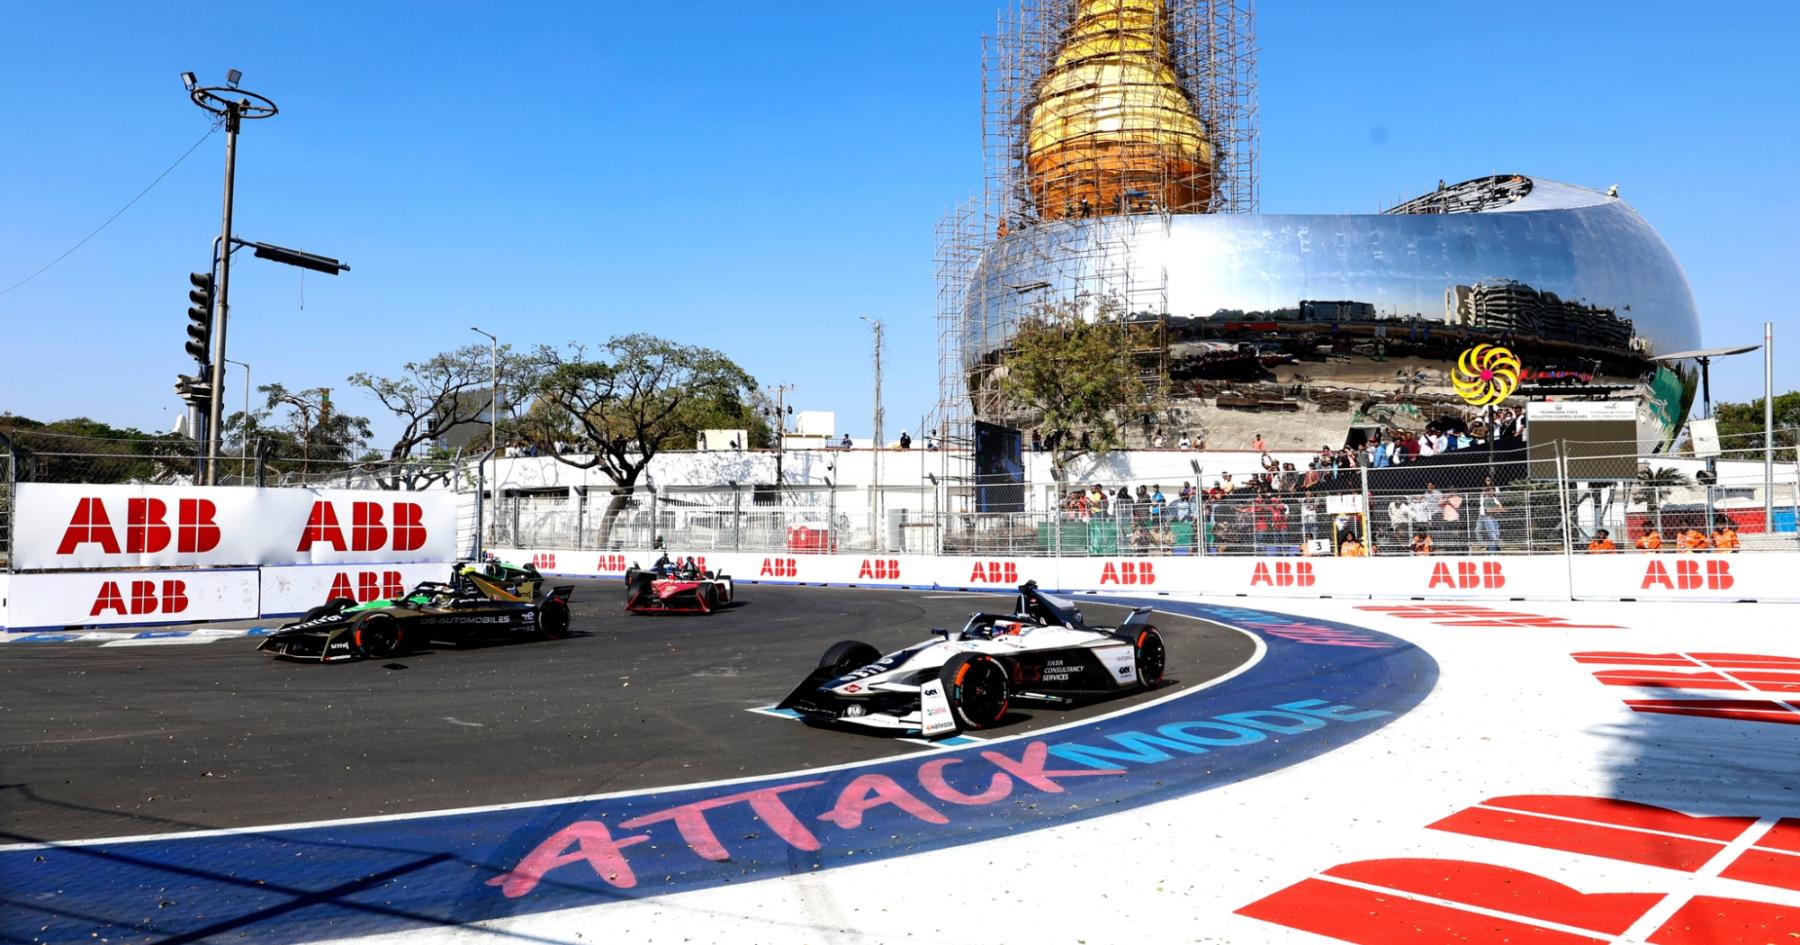 Last-minute race cancellation ‘heartbreaking’ – Jaguar boss